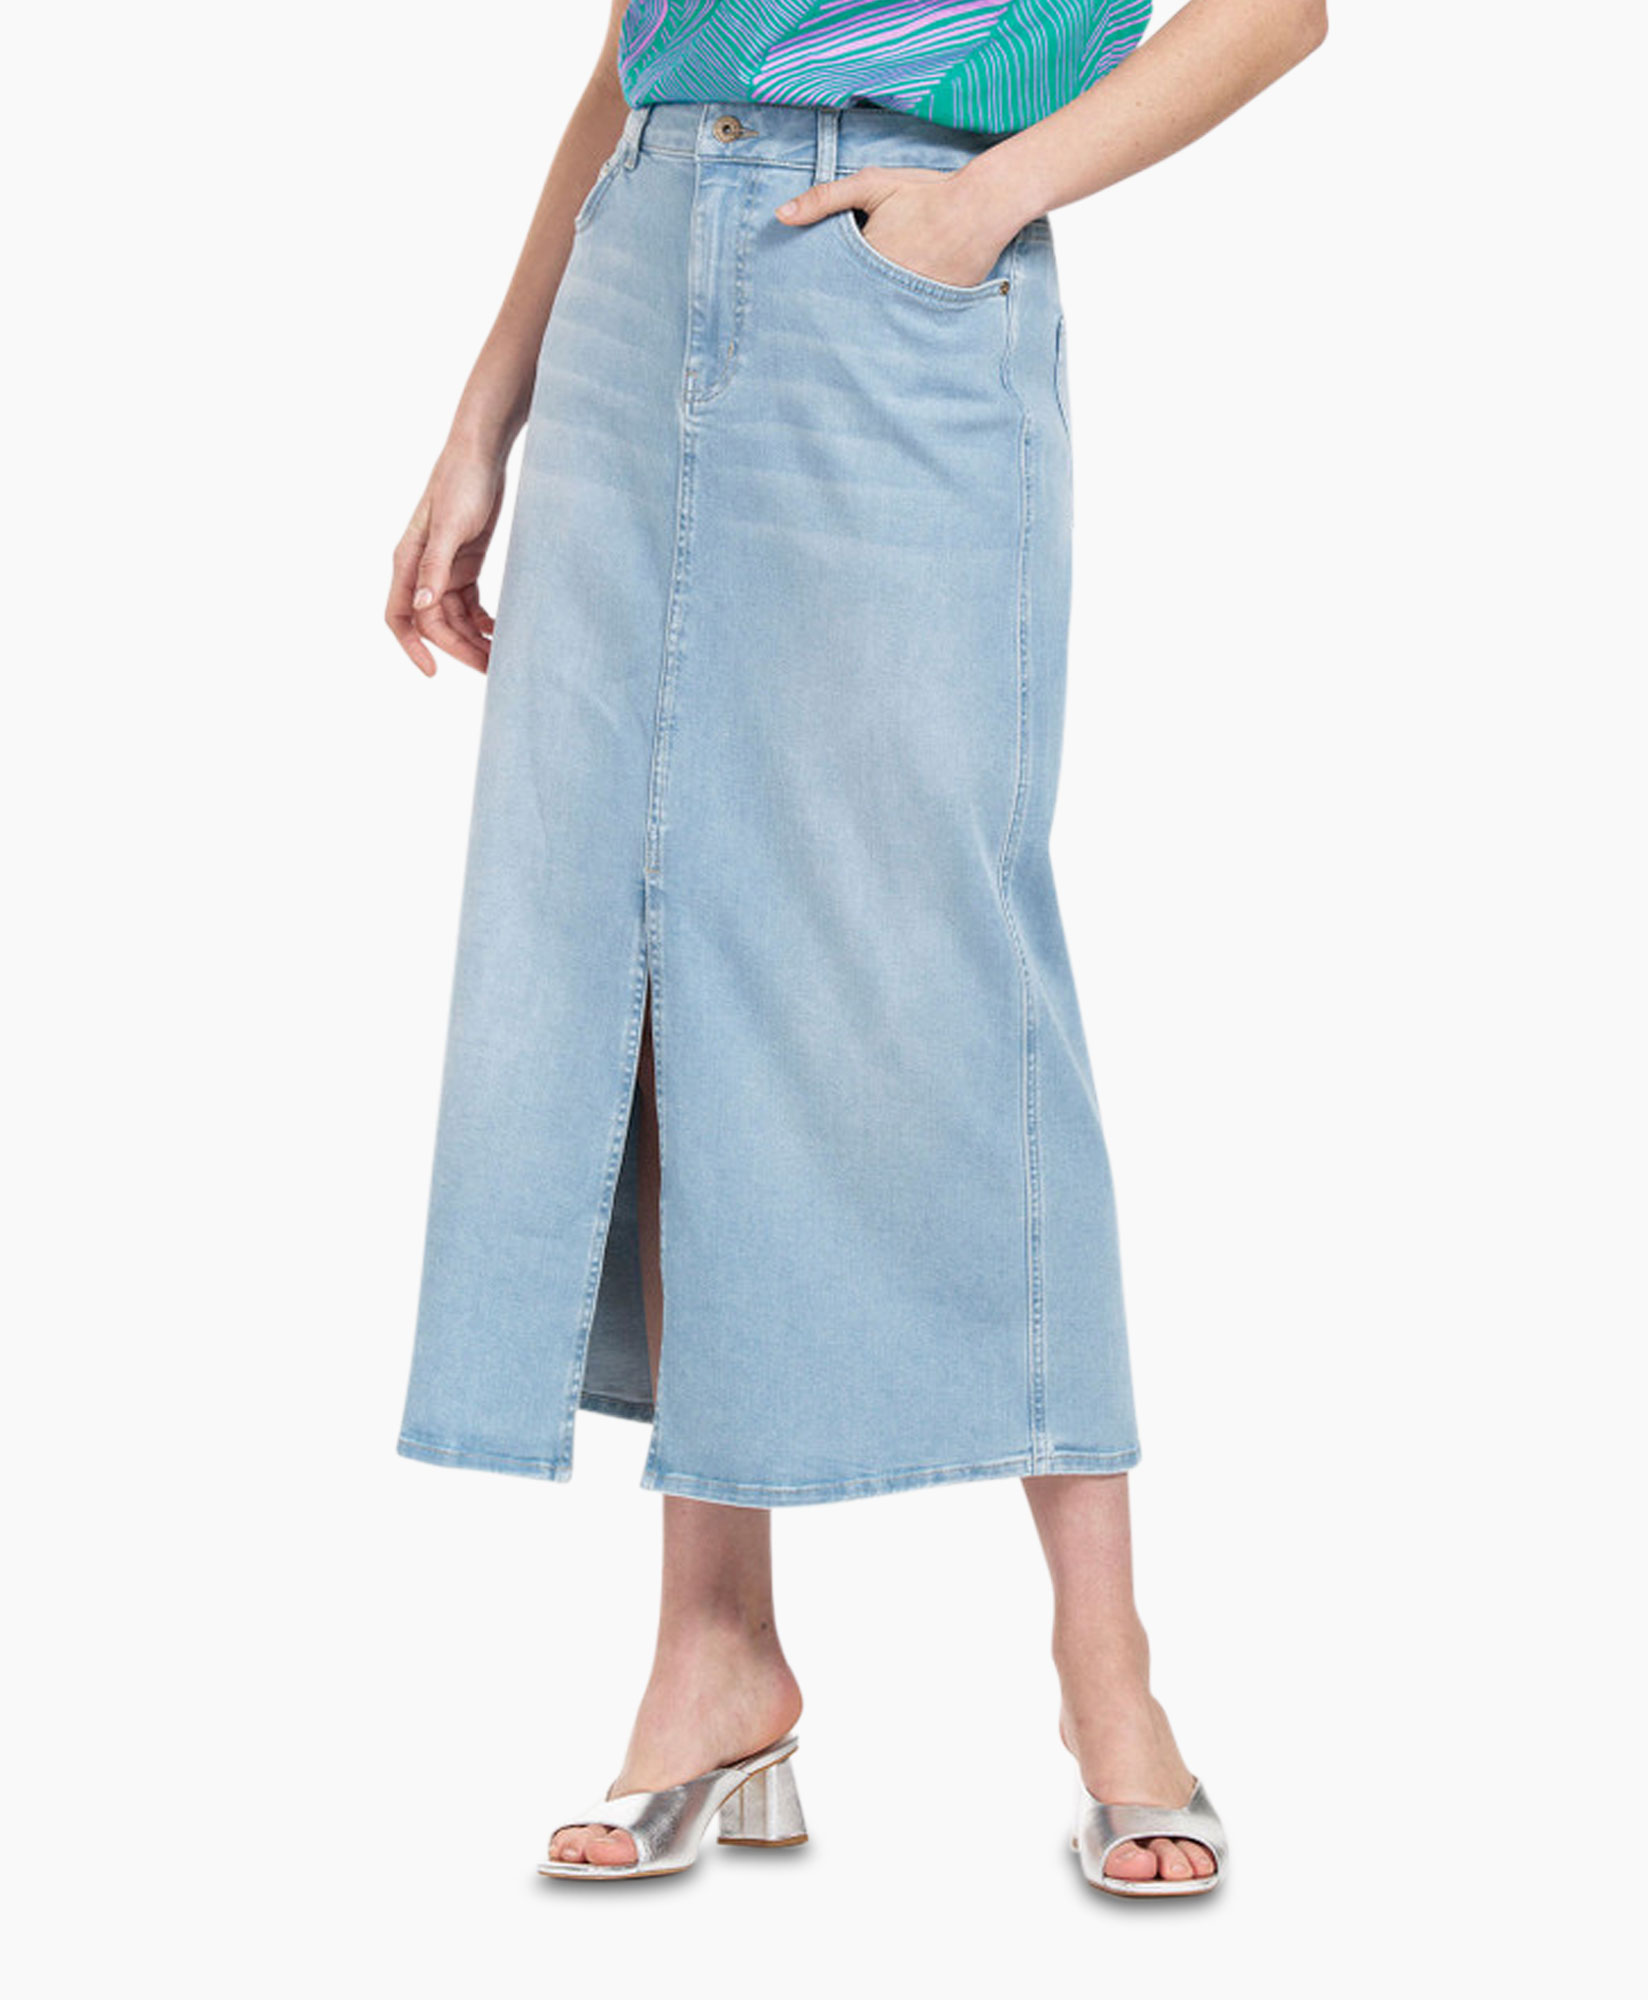 Rok Annebella Denim Skirt Jeans